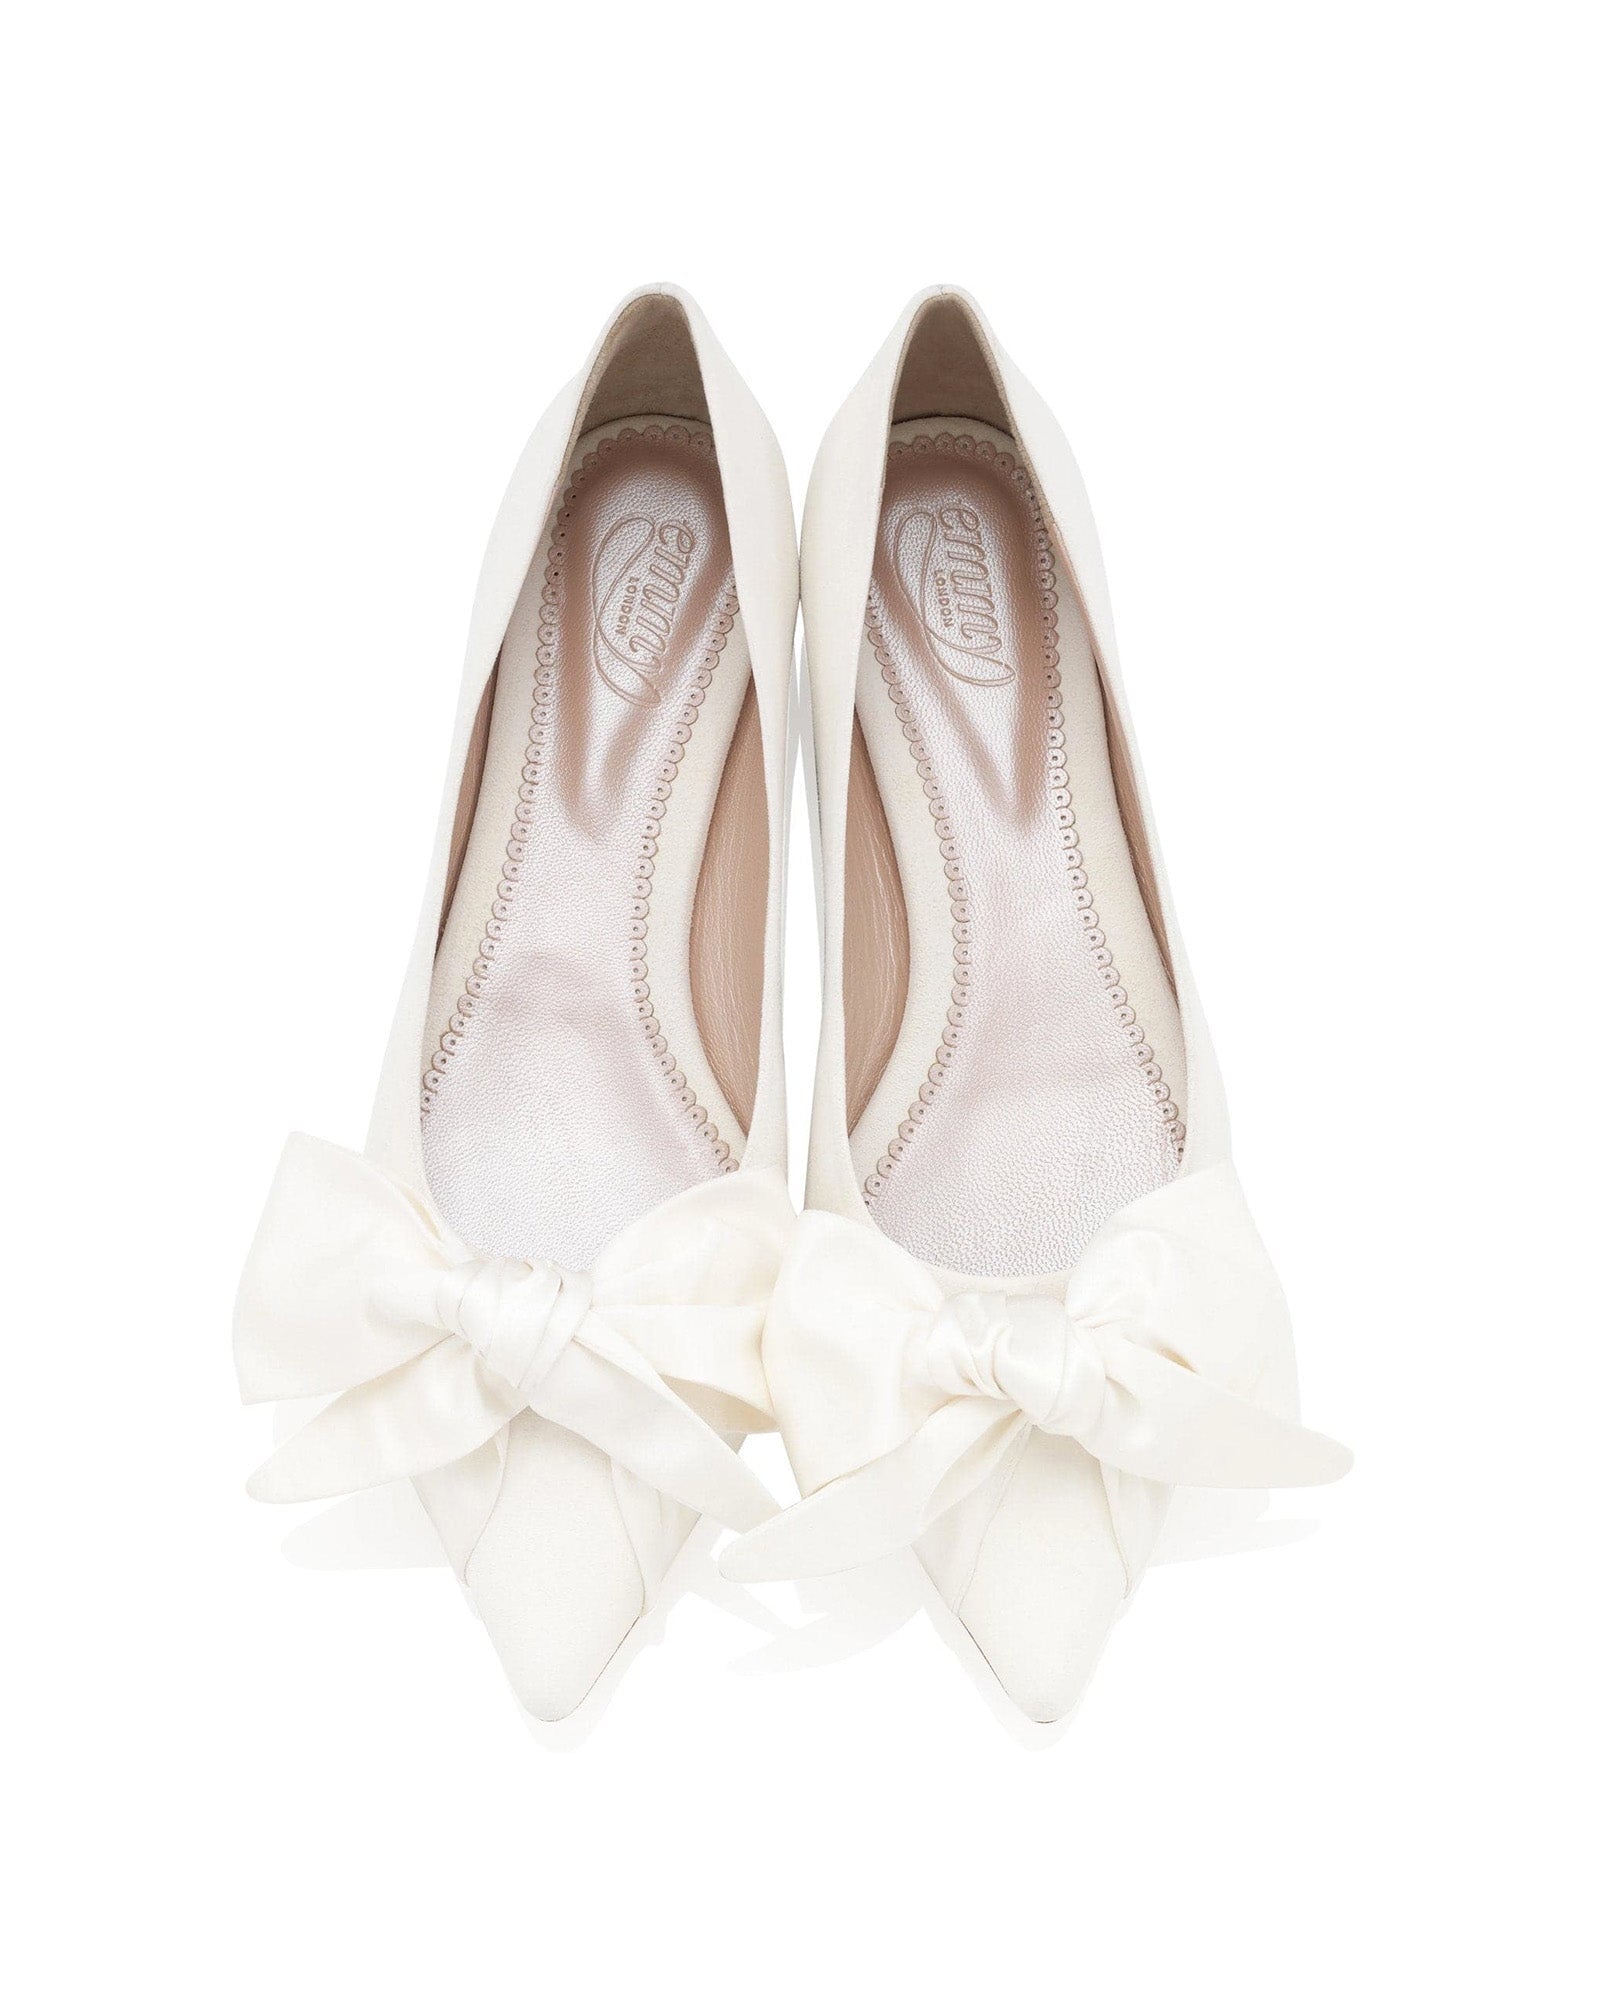 Florence Flat Ivory Bridal Shoe Flat Wedding Shoes With Bow  image